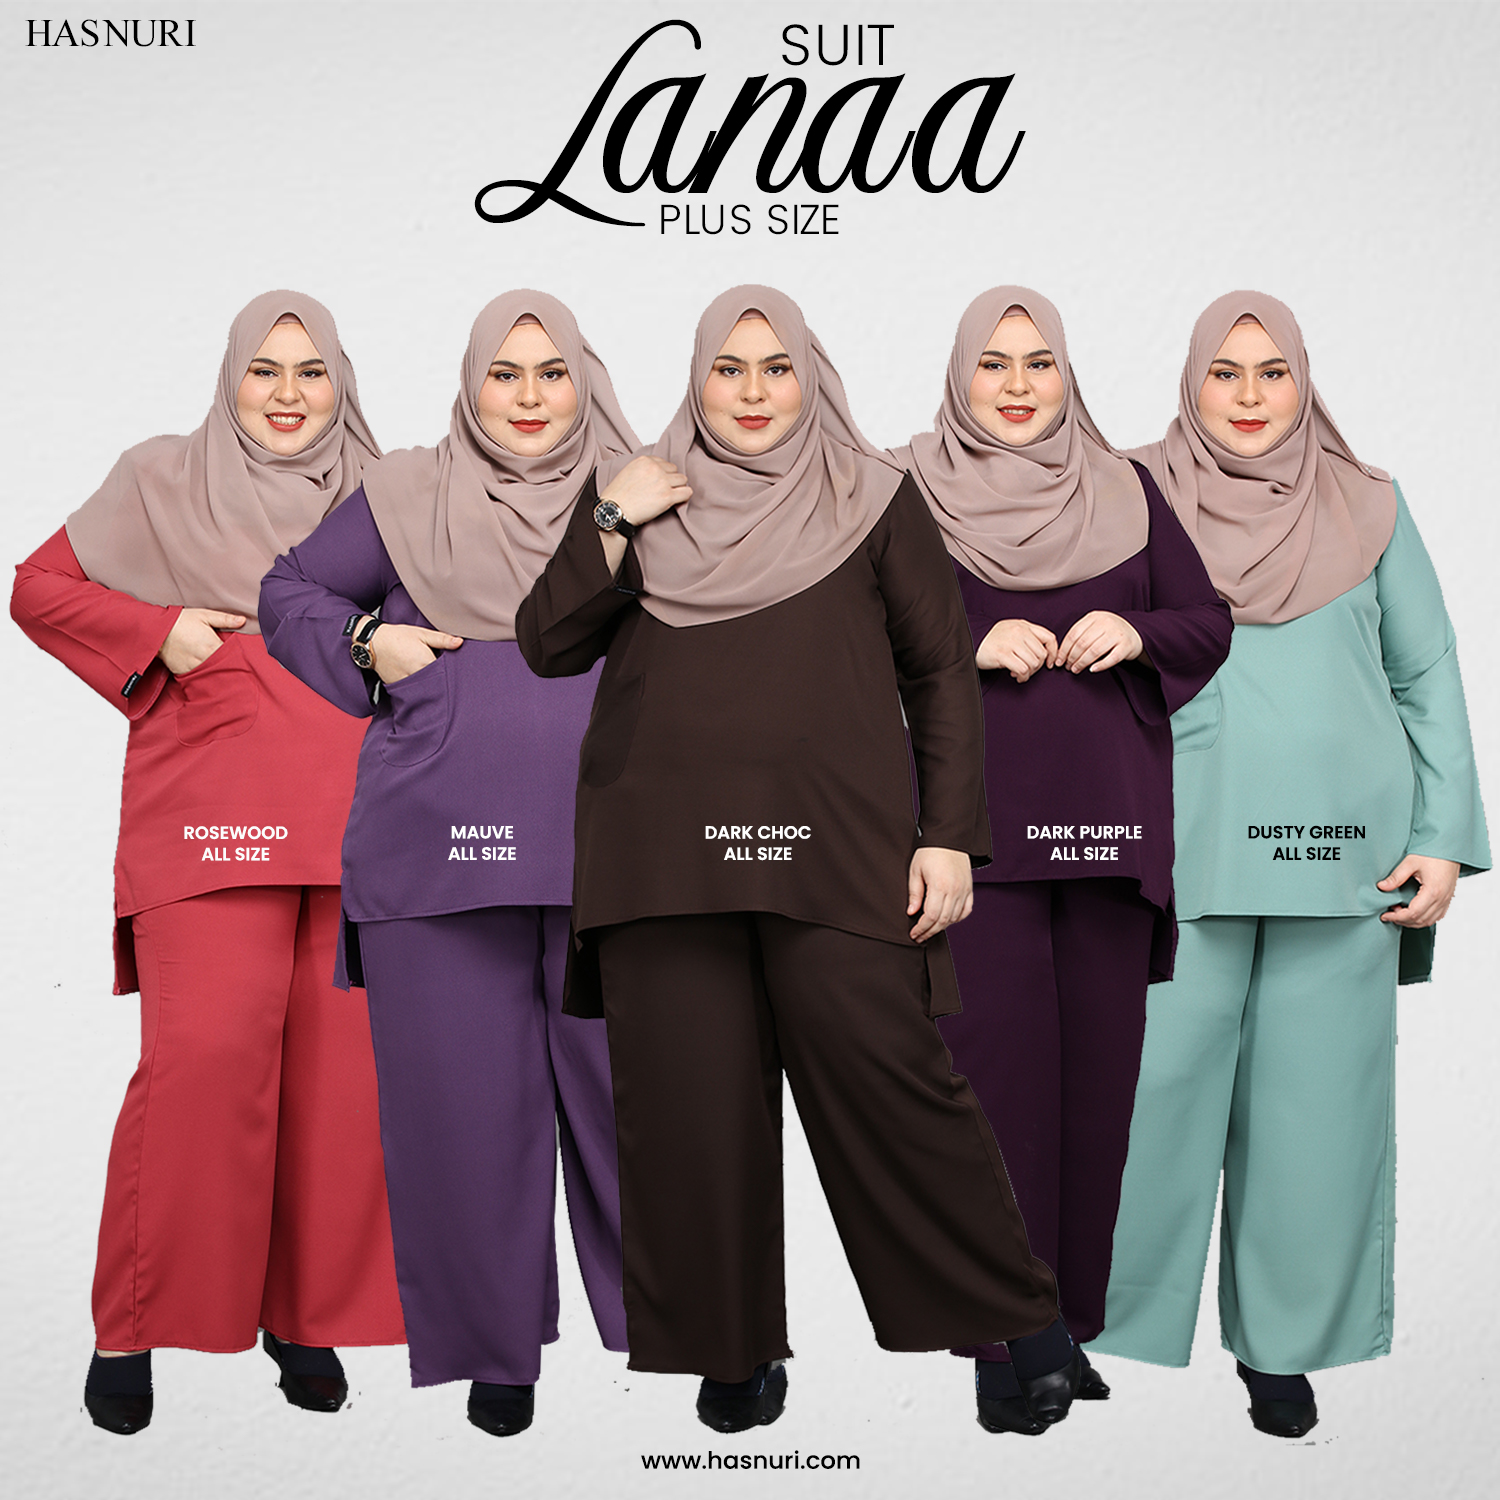 Suit Lanaa Plus Size - Mauve